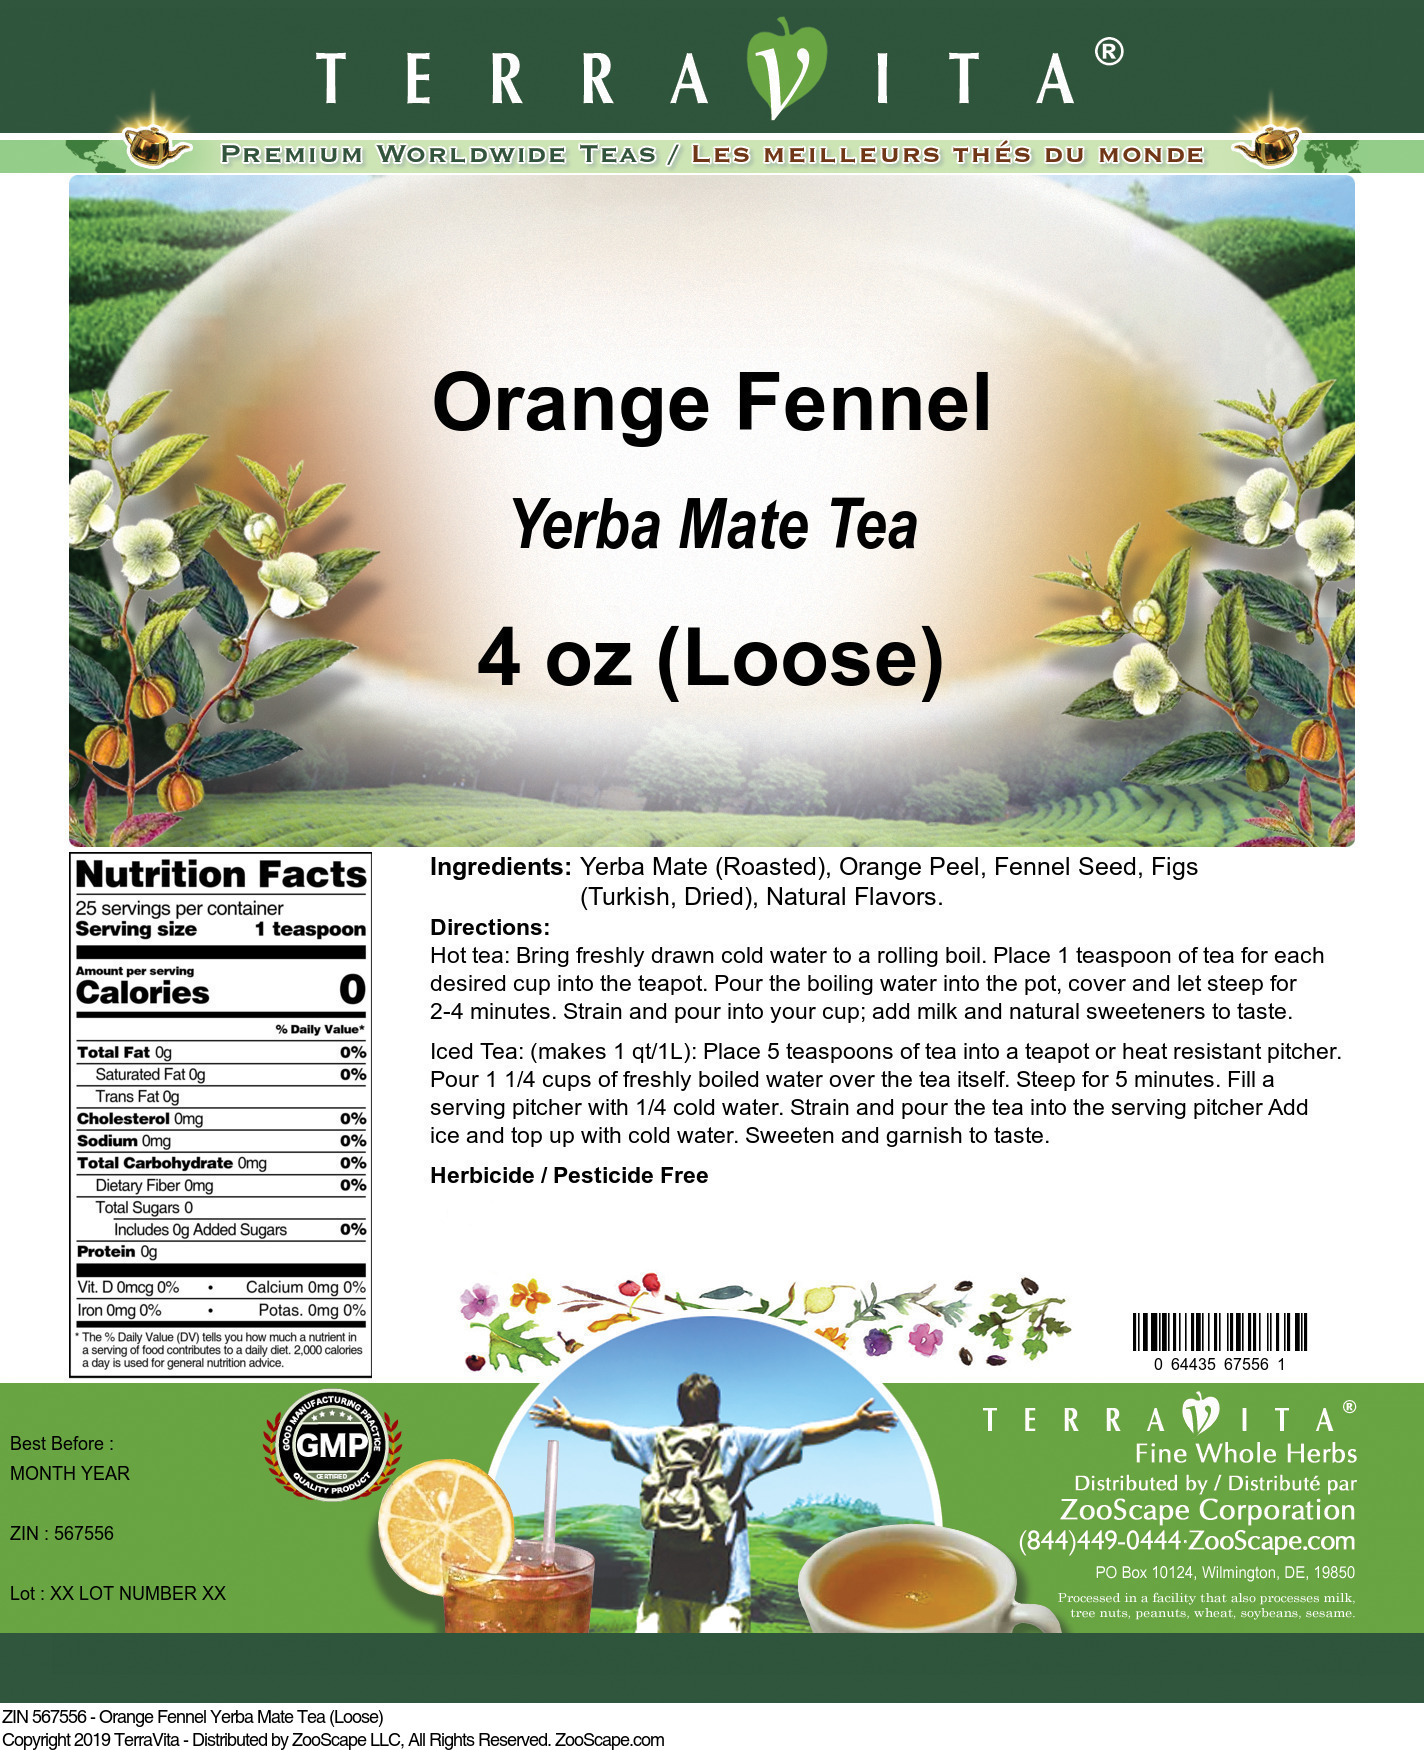 Orange Fennel Yerba Mate Tea (Loose) - Label